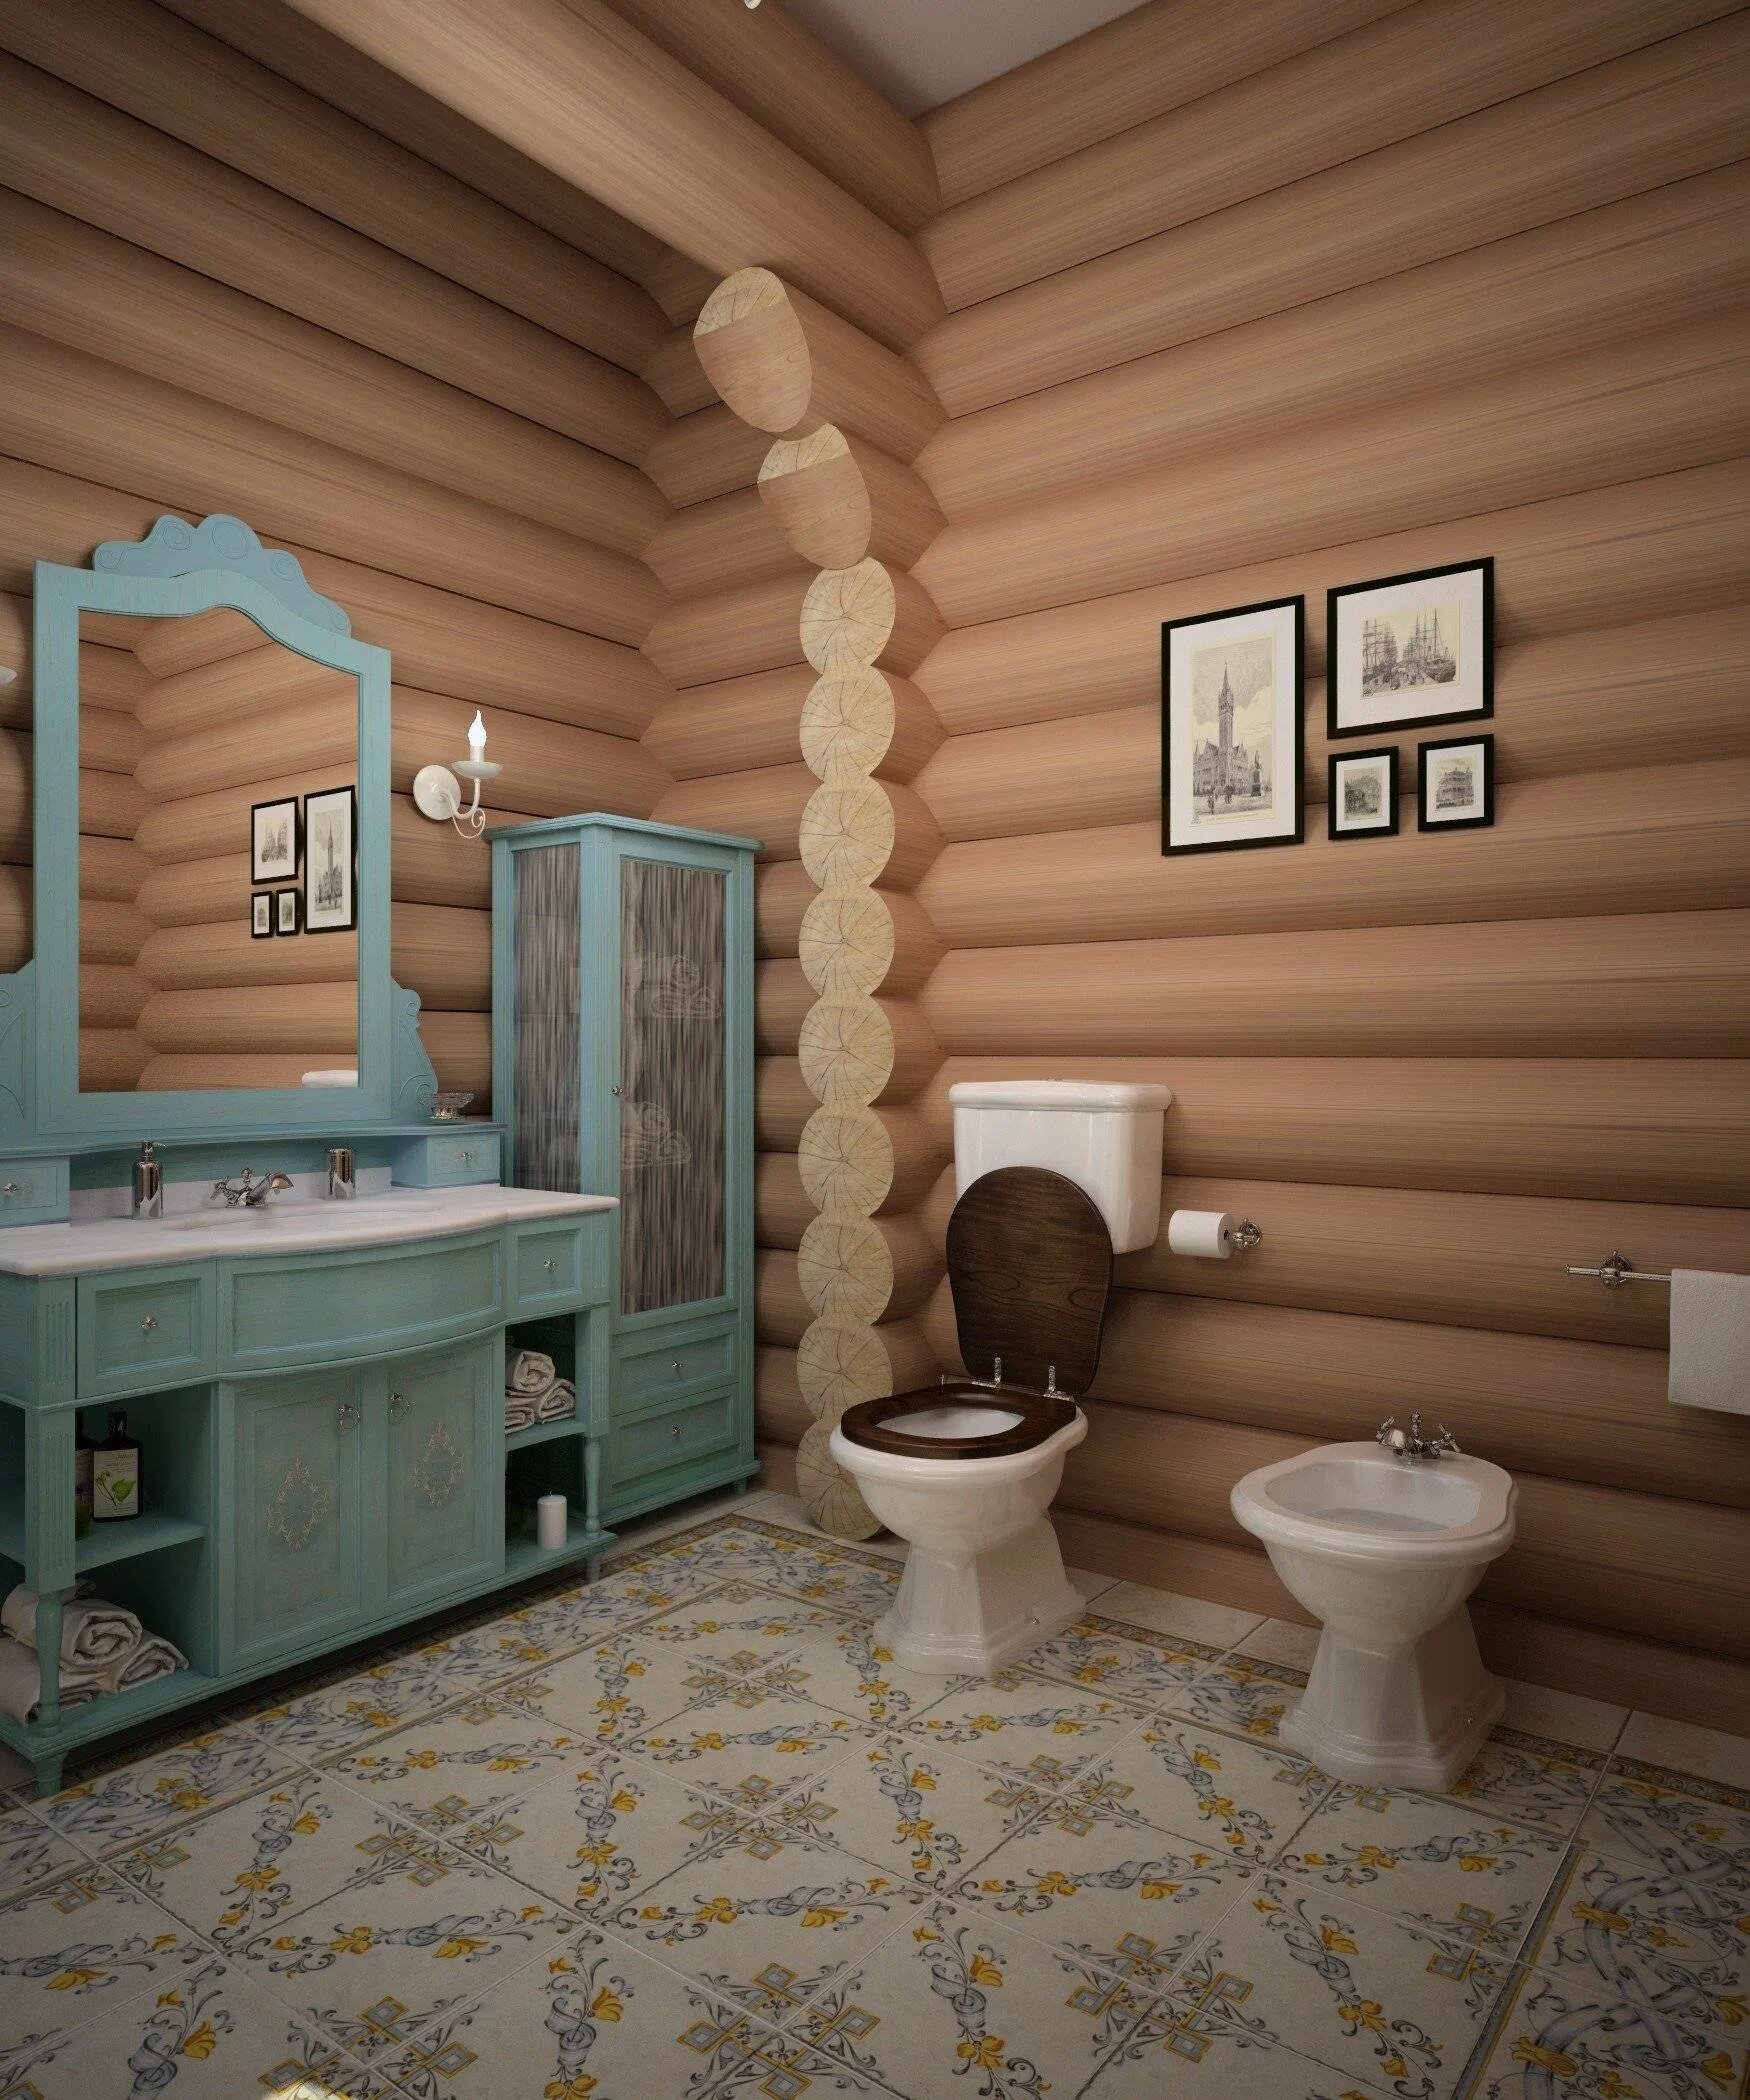 Санузел в деревянном доме. Ванная комната в деревянном доме. Санузел в доме из оцилиндрованного бревна. Туалет в доме из оцилиндрованного бревна.